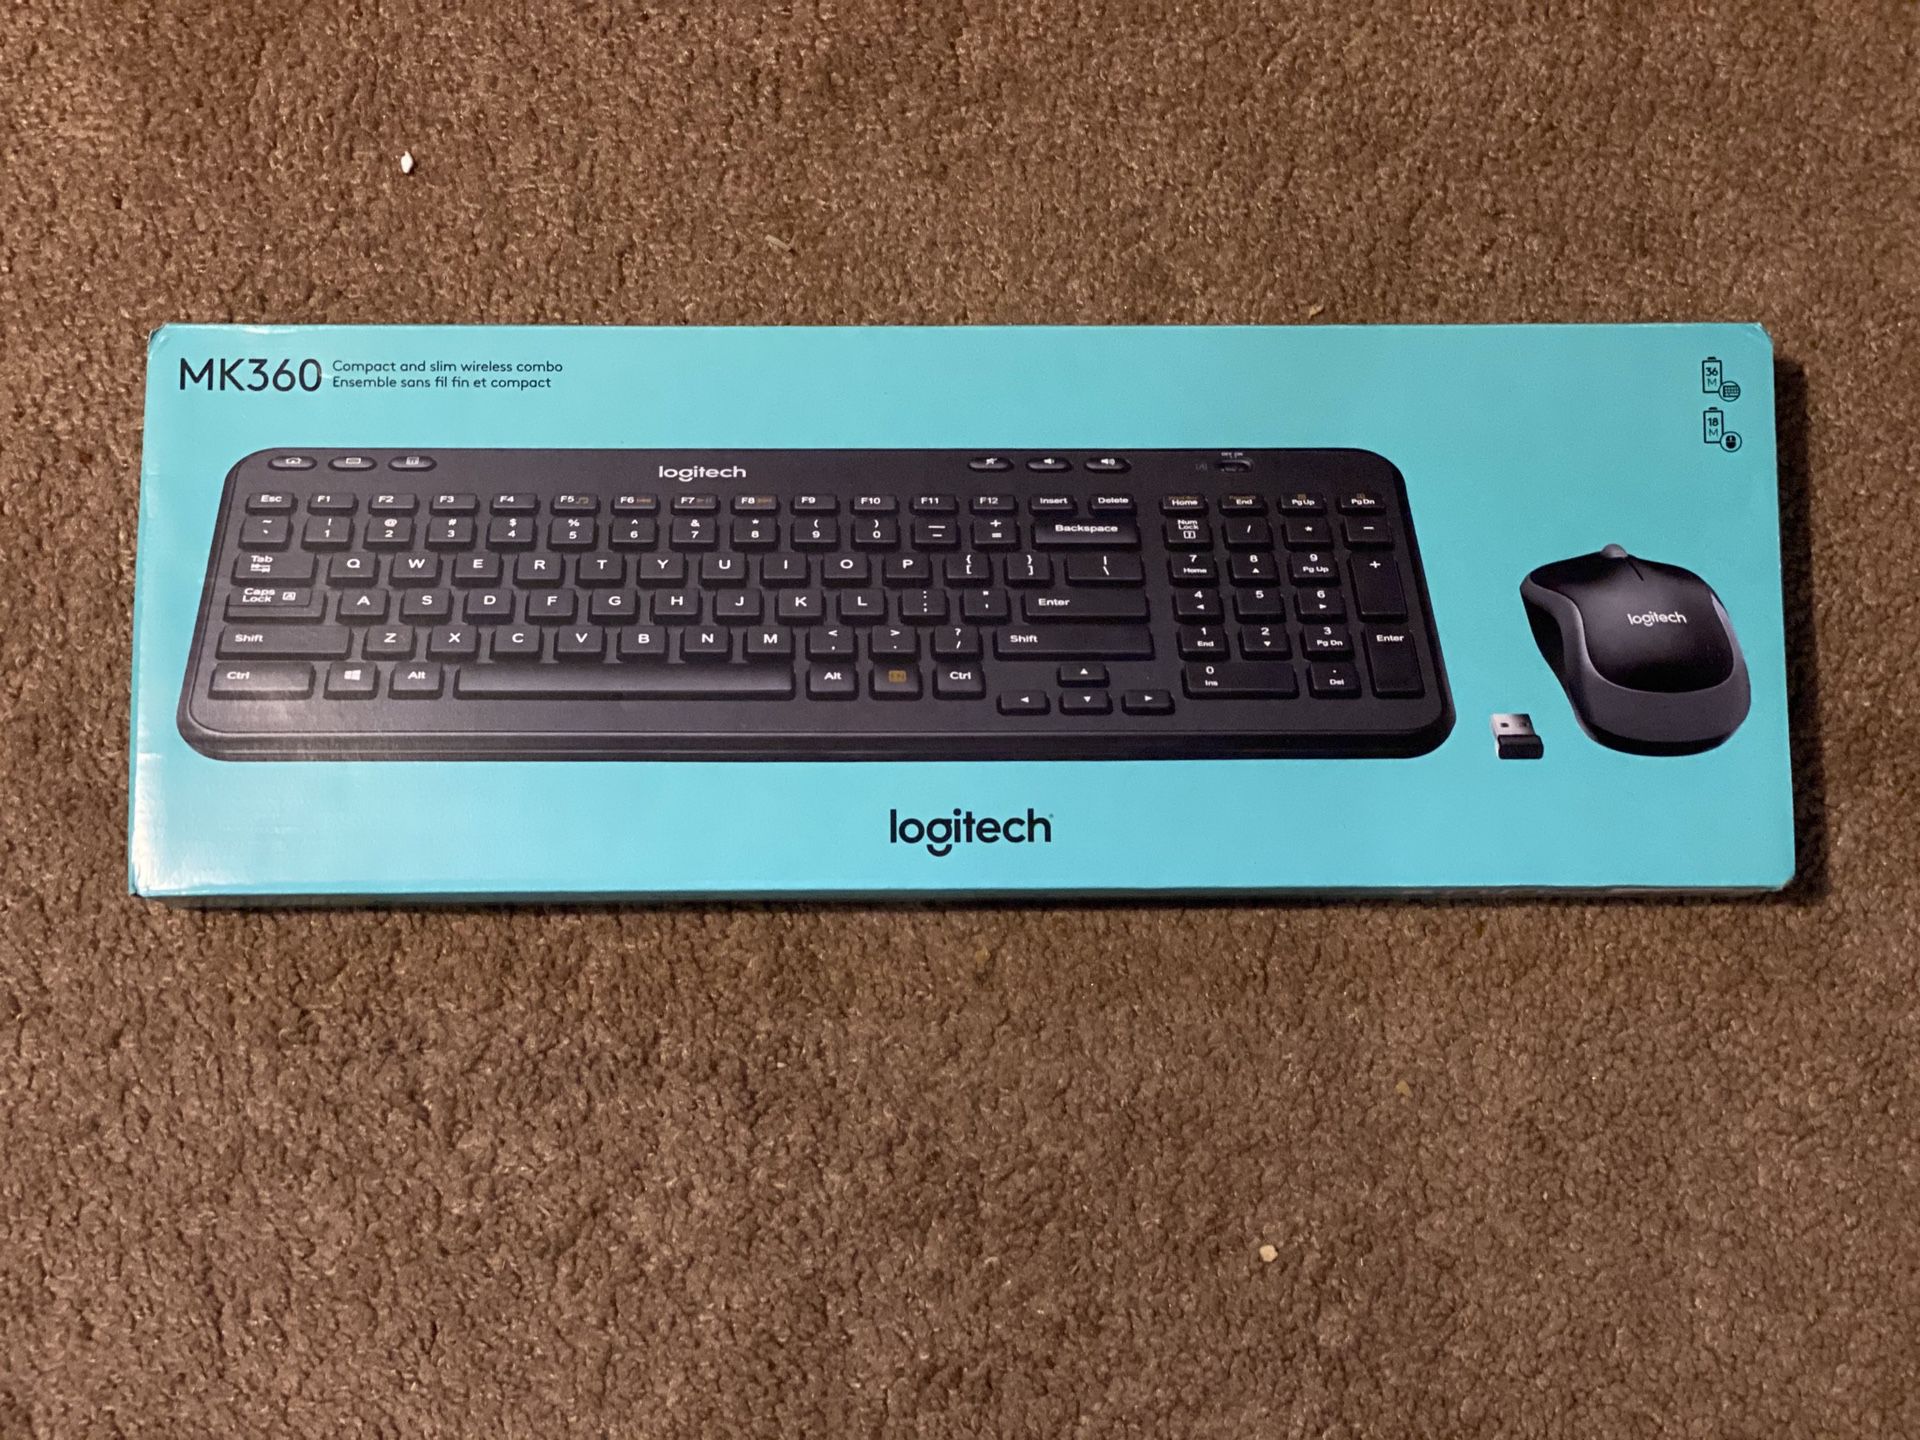 Logitech mk320 keyboard and mouse set